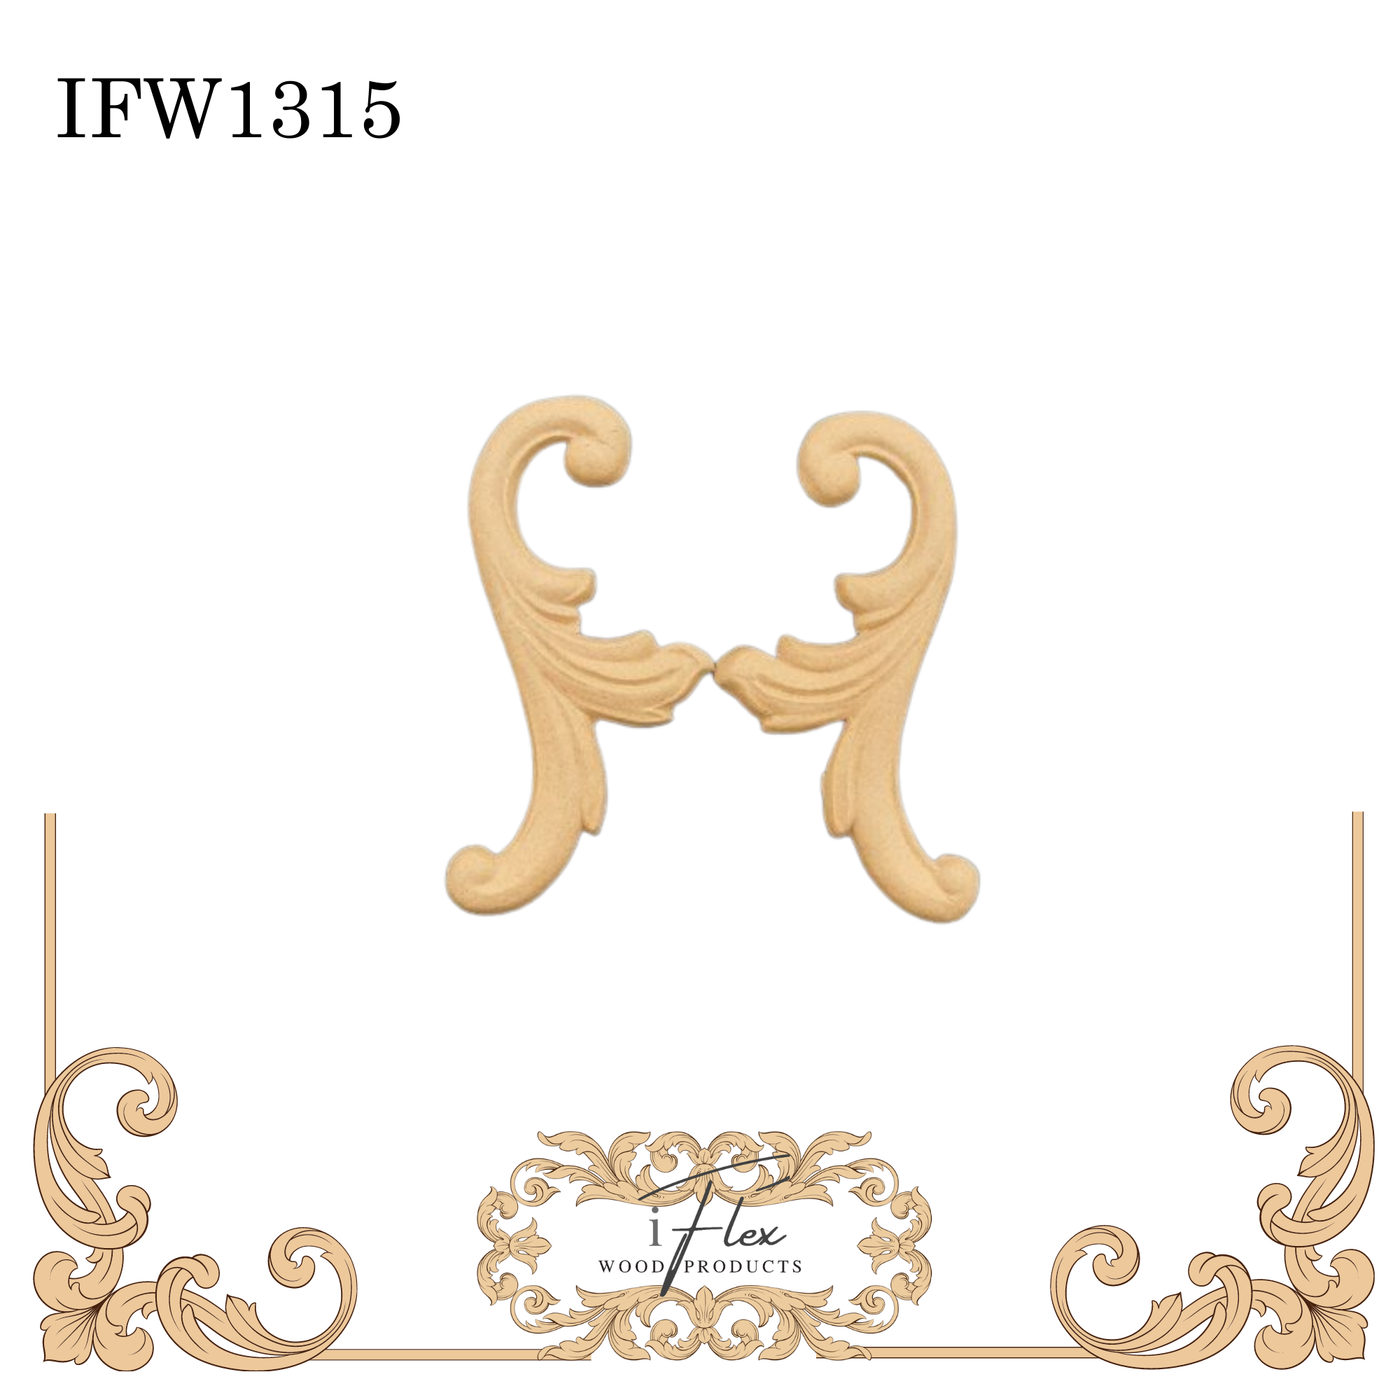 IFW 1315